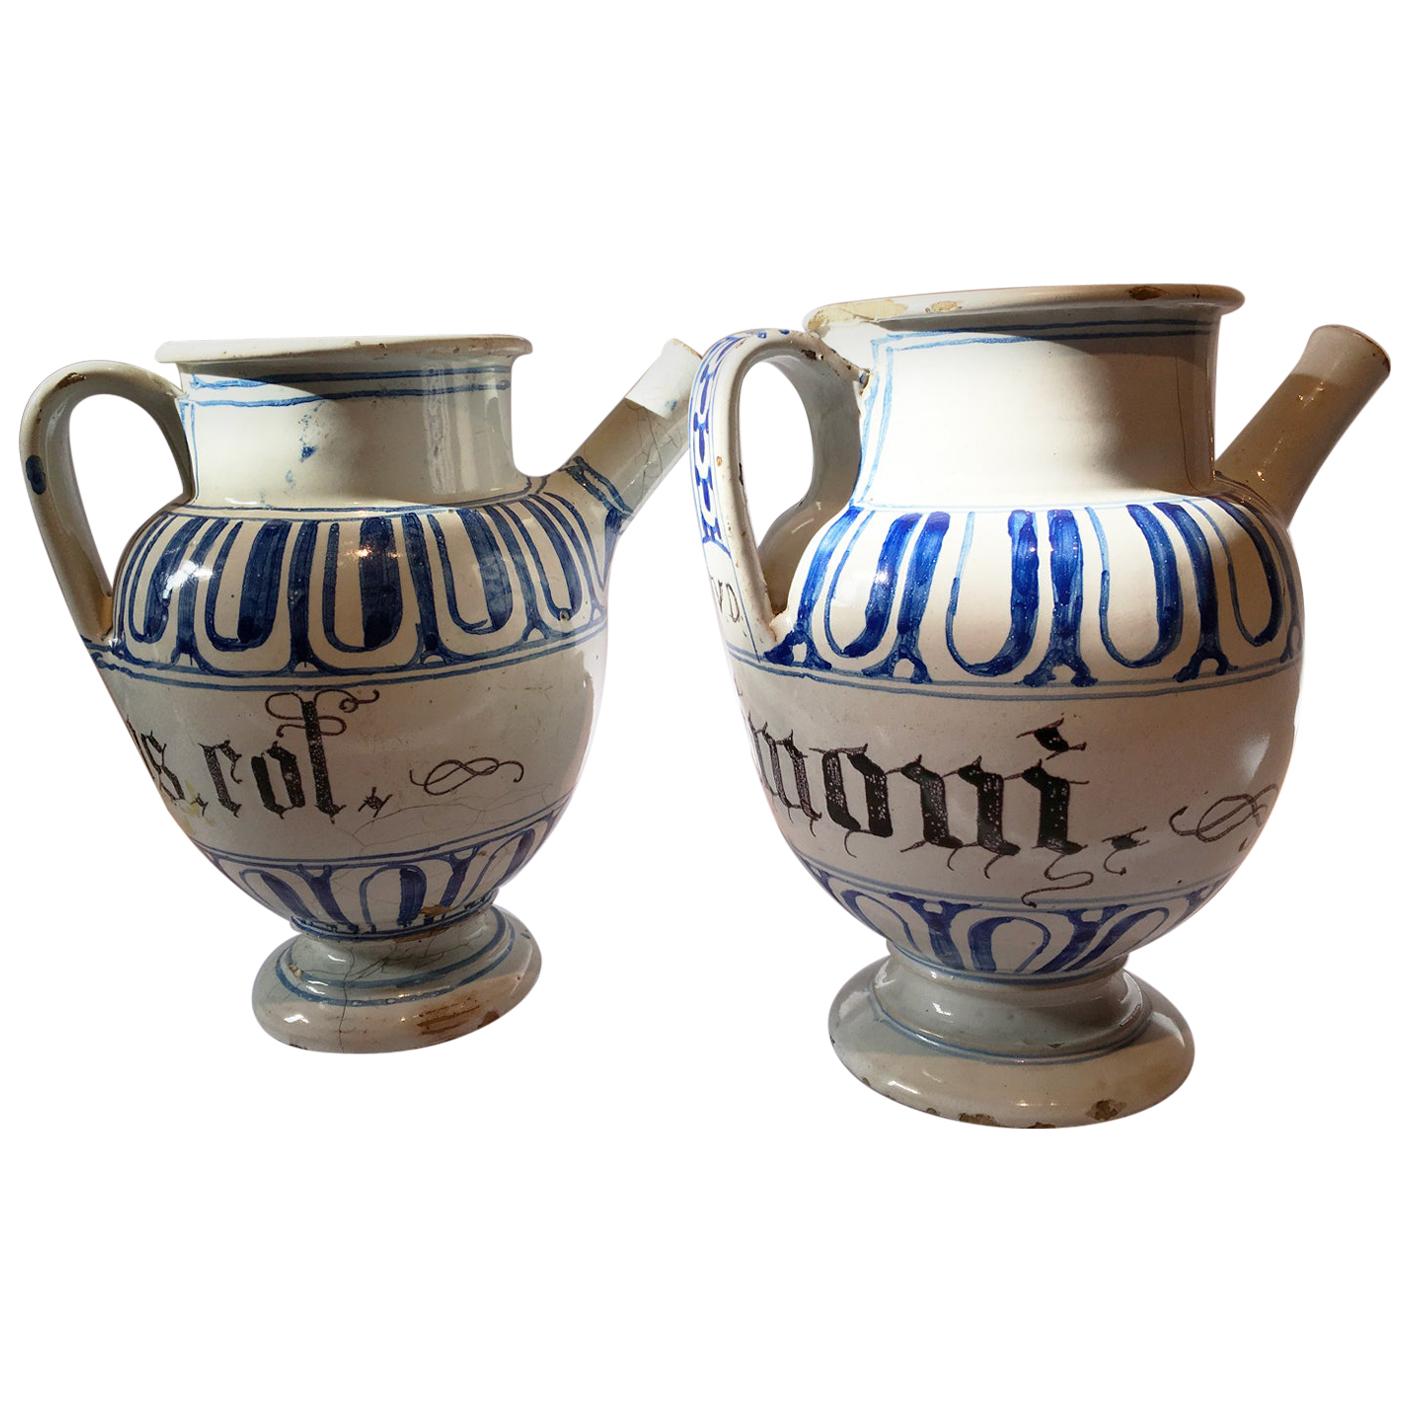 Italie, milieu du XVIIIe siècle Paire de carafes en céramique blanche et bleue pour pharmacie